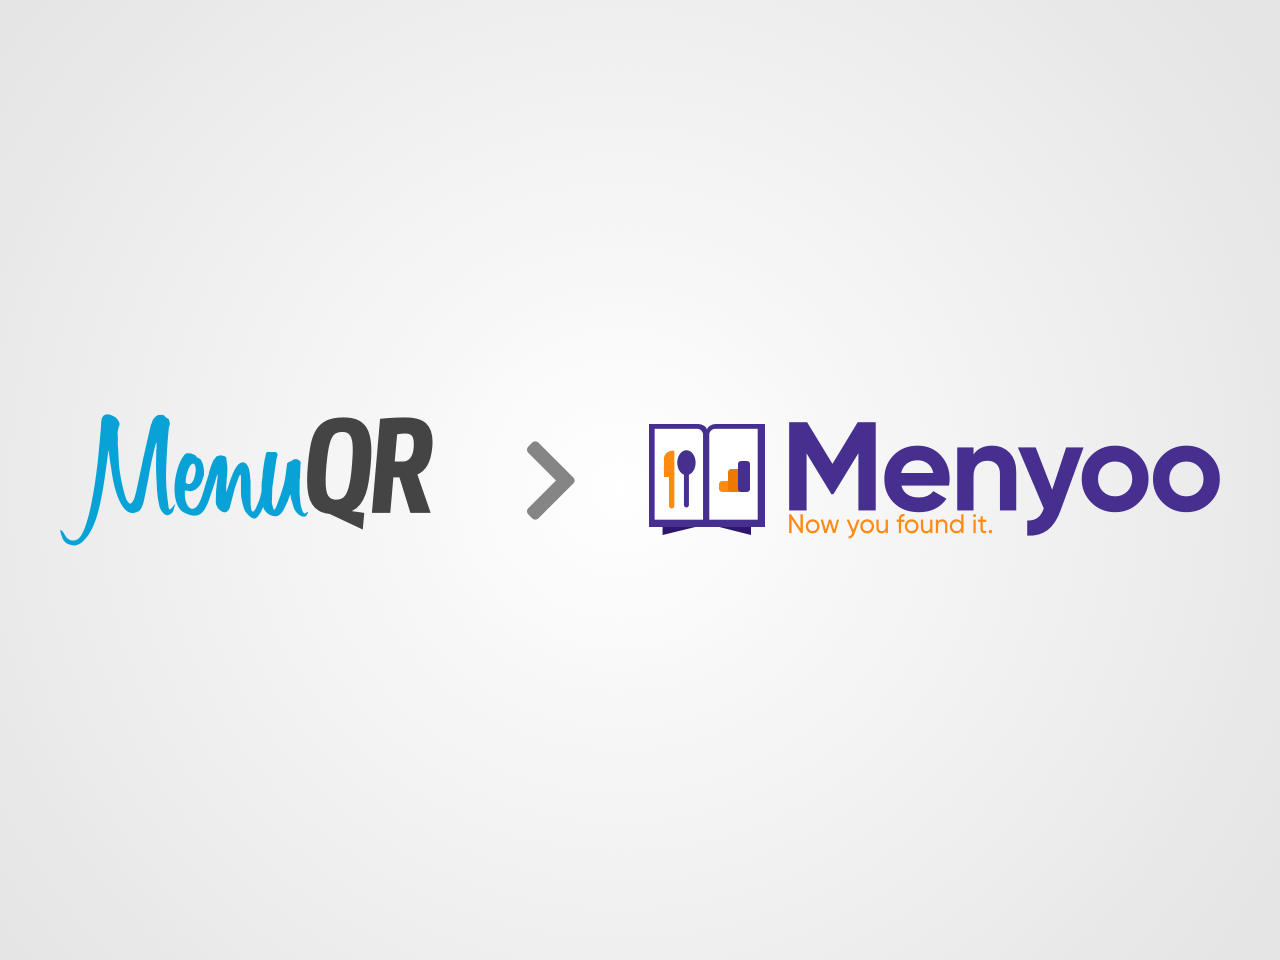 Imagem com logotipo MenuQR à esquerda, uma seta ao lado direito apontando para a direita e o logotipo da Menyoo ao lado direito da imagem.